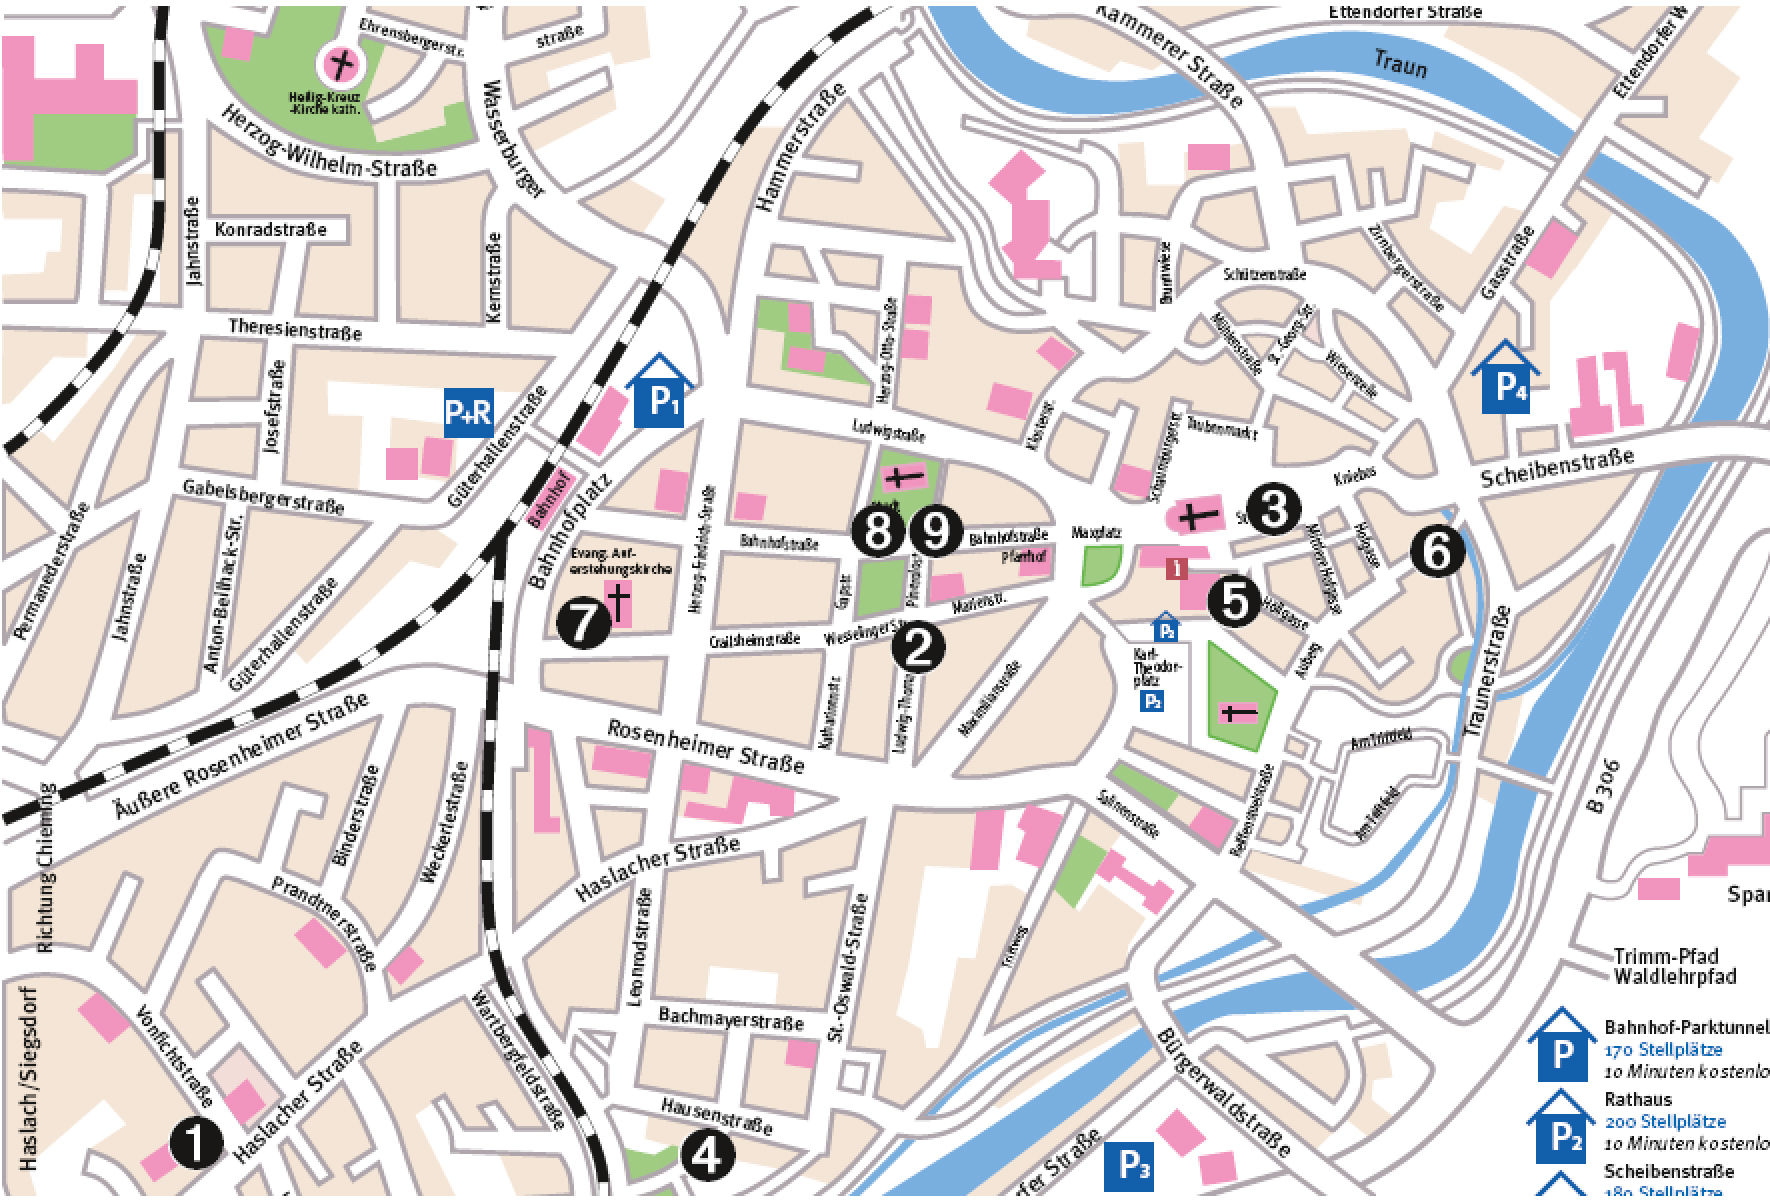 Stadtplan Traunstein mit Ausstellungsorten OJA 2018